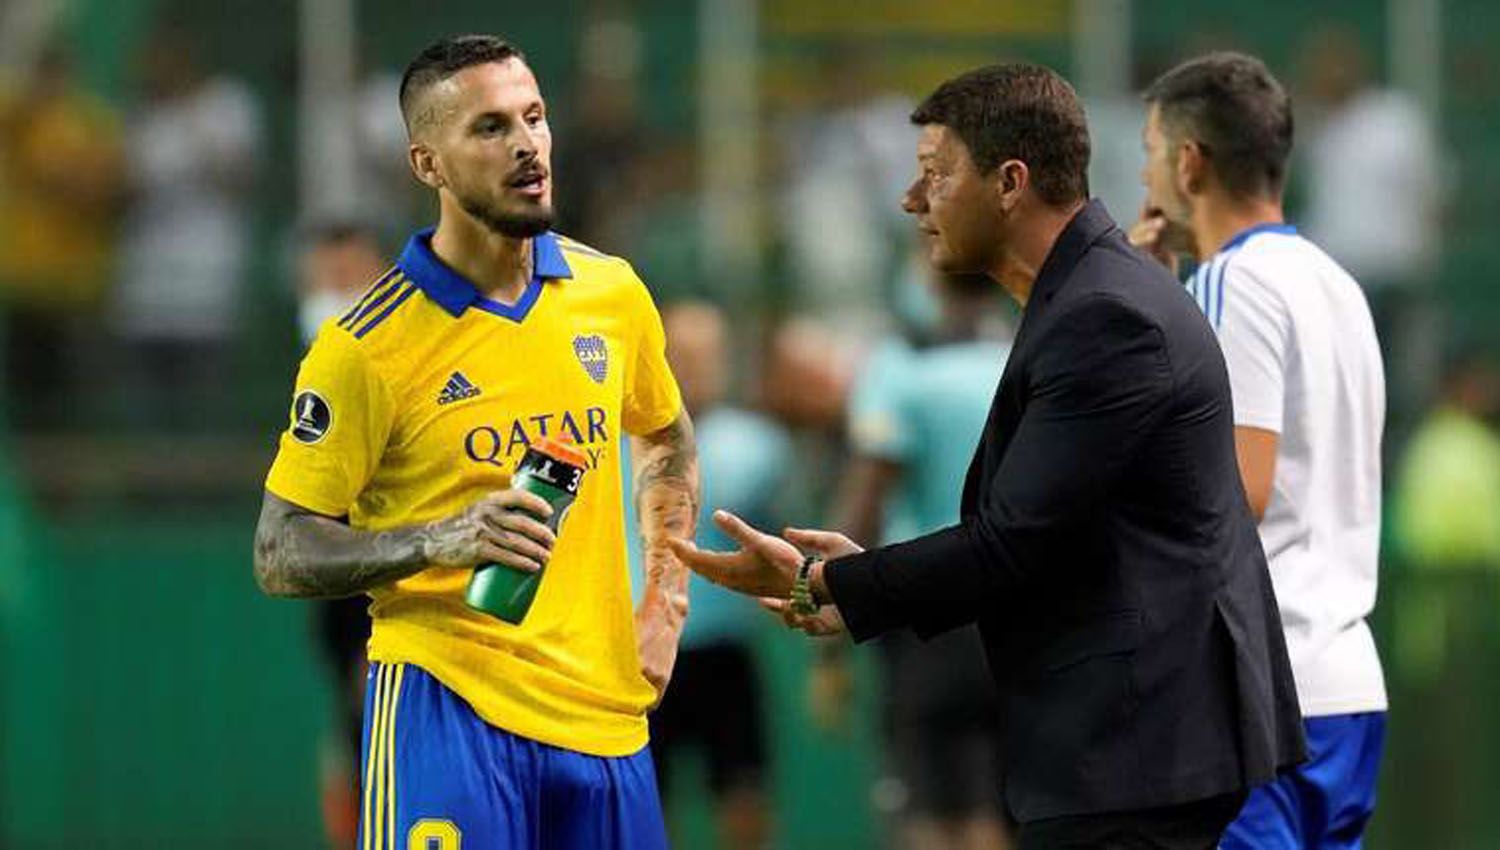 El director técnico y el ex jugador con mas copas en Boca dio unos comentarios que a los seguidores del club no les pareció muy gratos.